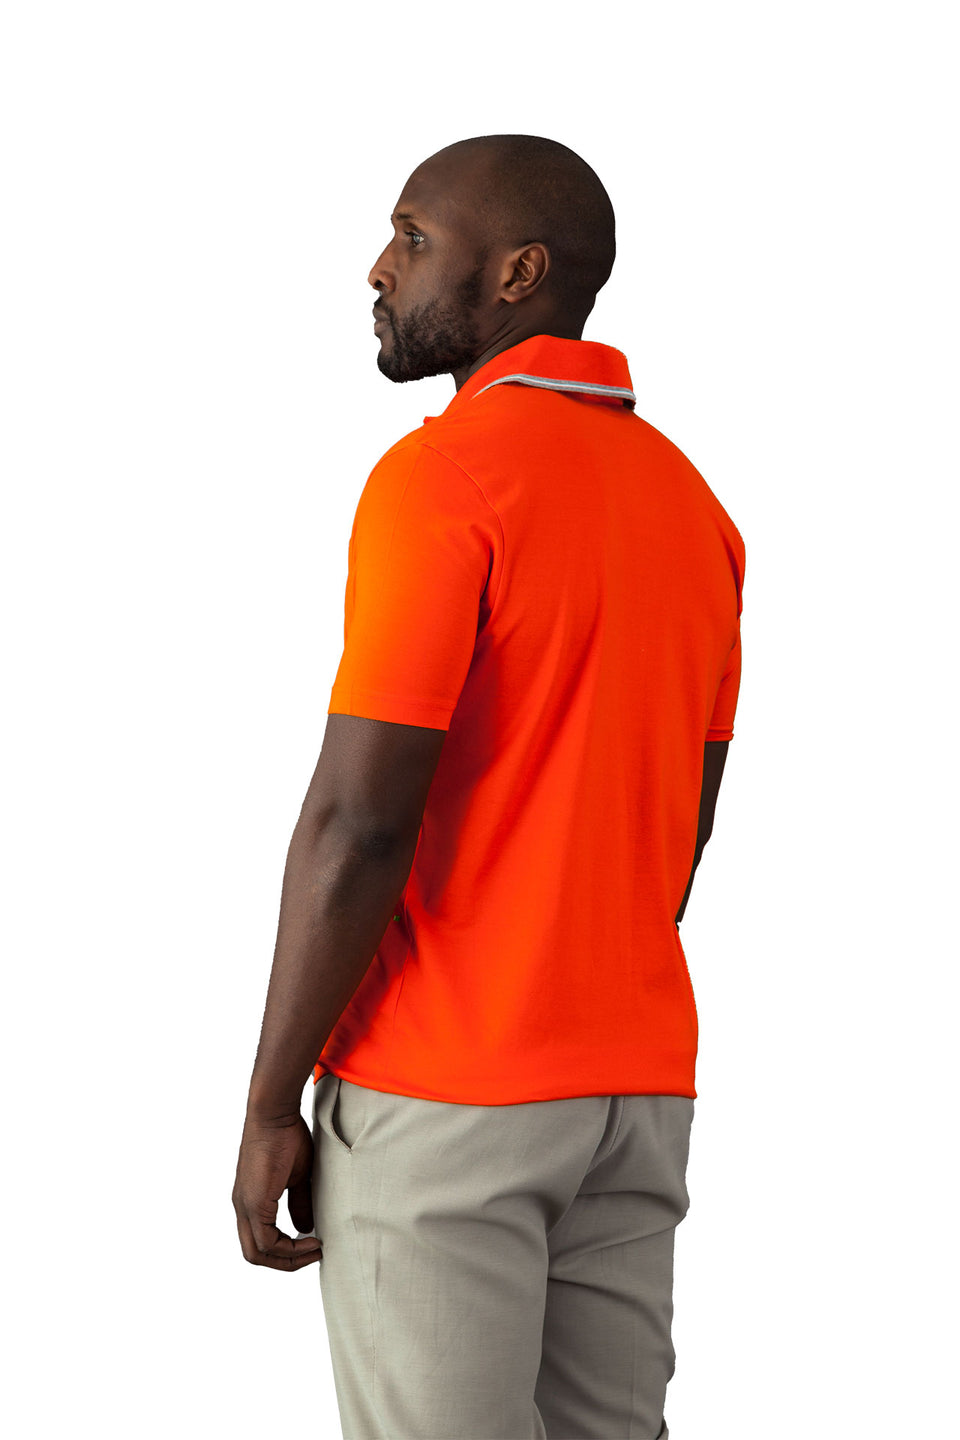 Hugo Boss Orange Polo Shirt - Camden Connaught